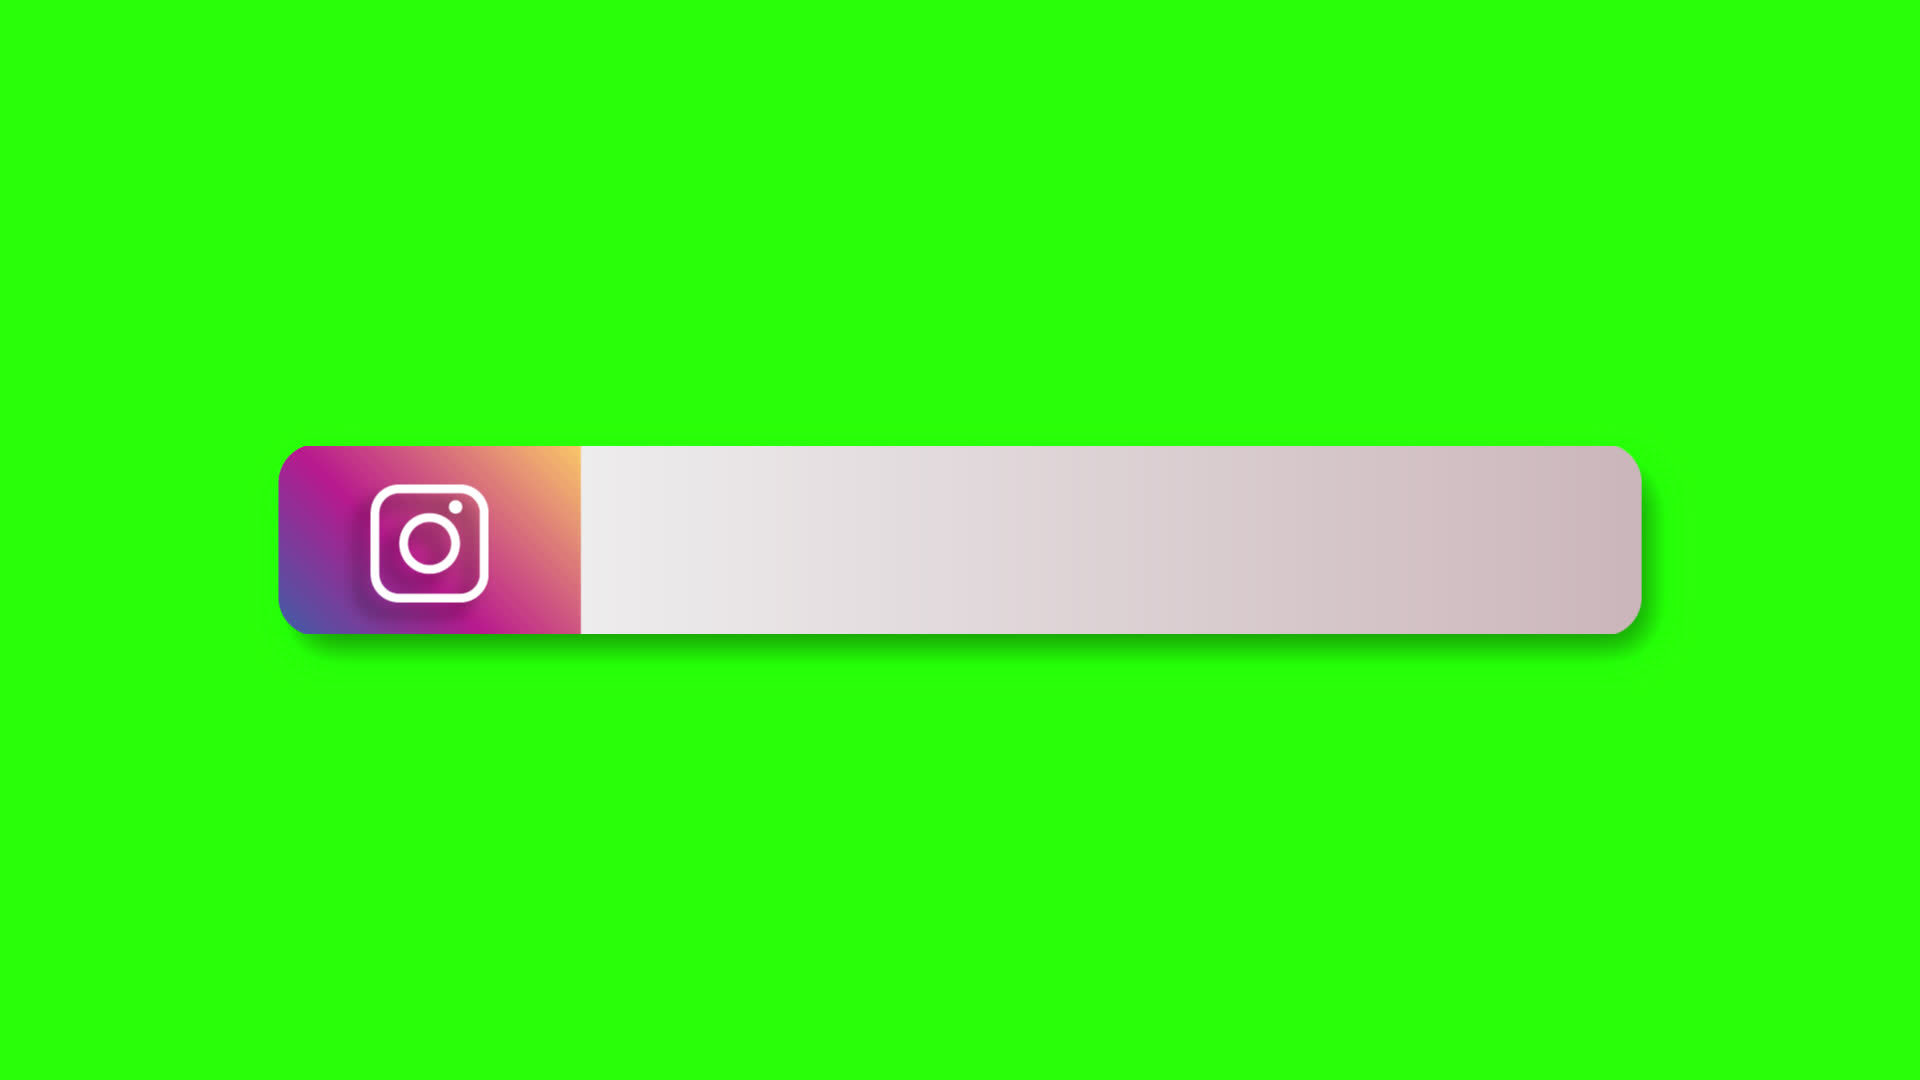 Thiết kế Green Screen Instagram Lower Third độc đáo sẽ giúp bạn tăng tính chuyên nghiệp trong video của mình và thu hút nhiều người xem hơn. Hãy nhấn vào hình ảnh liên quan để khám phá thêm!